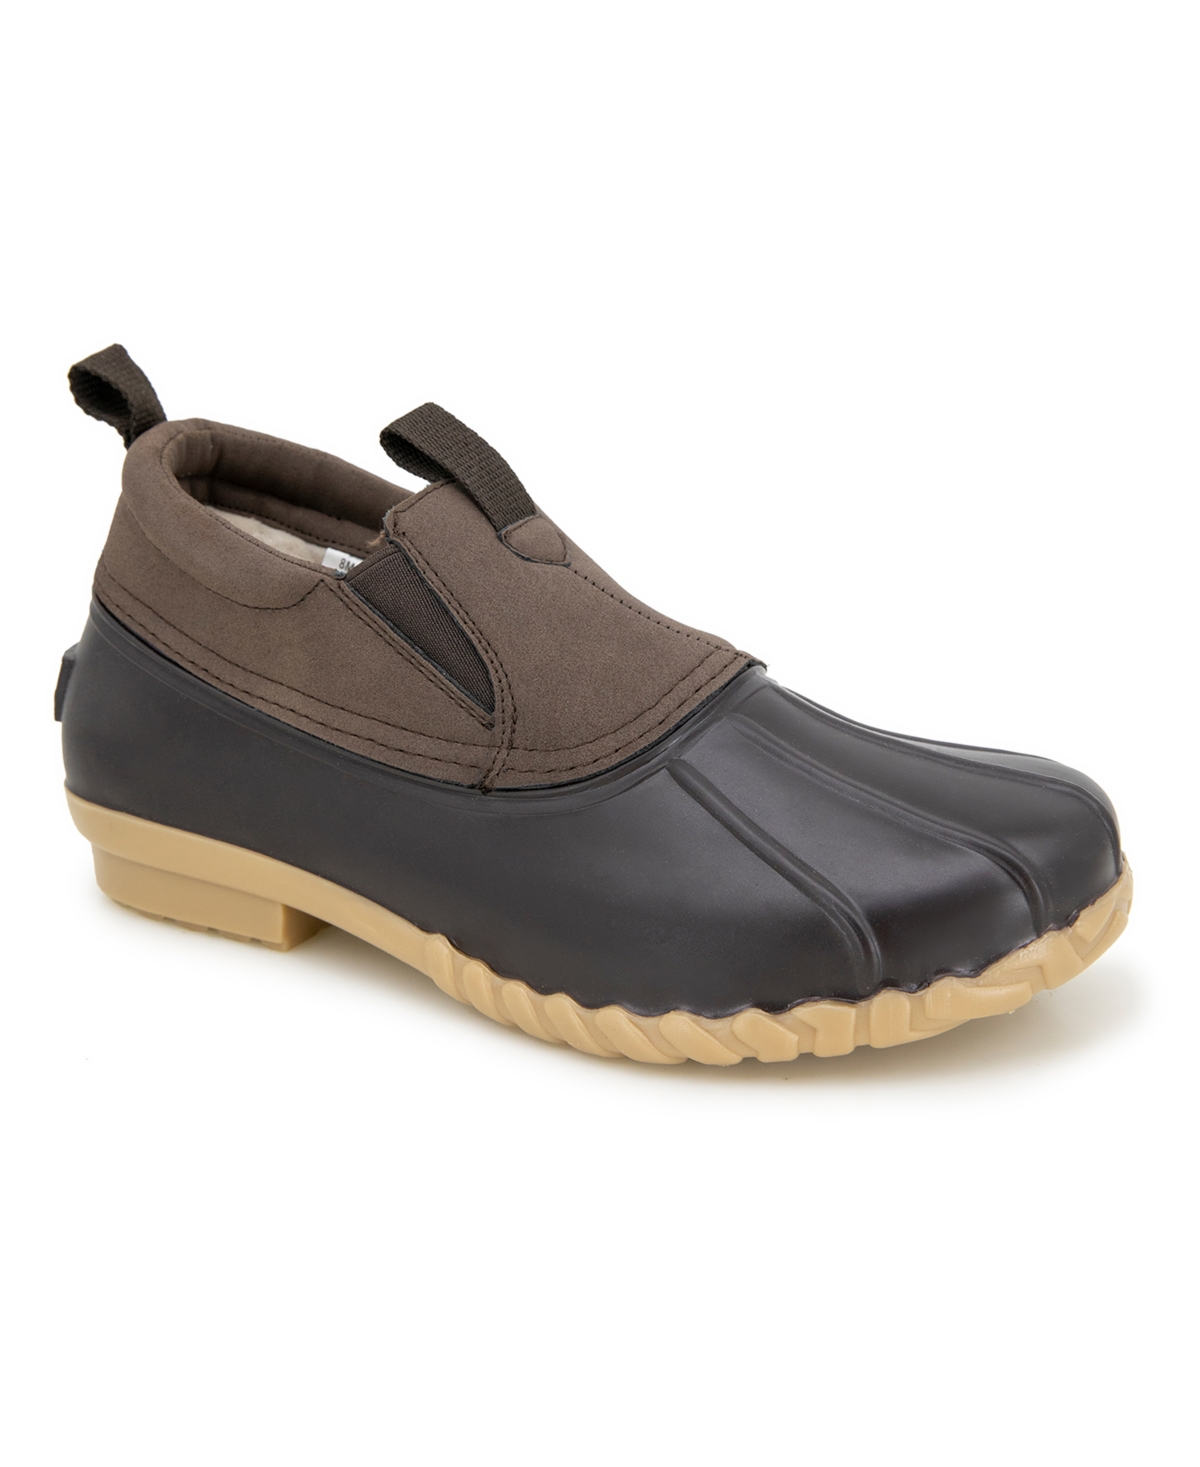 Jbu Men's Water Resistant Marsh Chelsea Duck Shoes In Dark Brown,brown